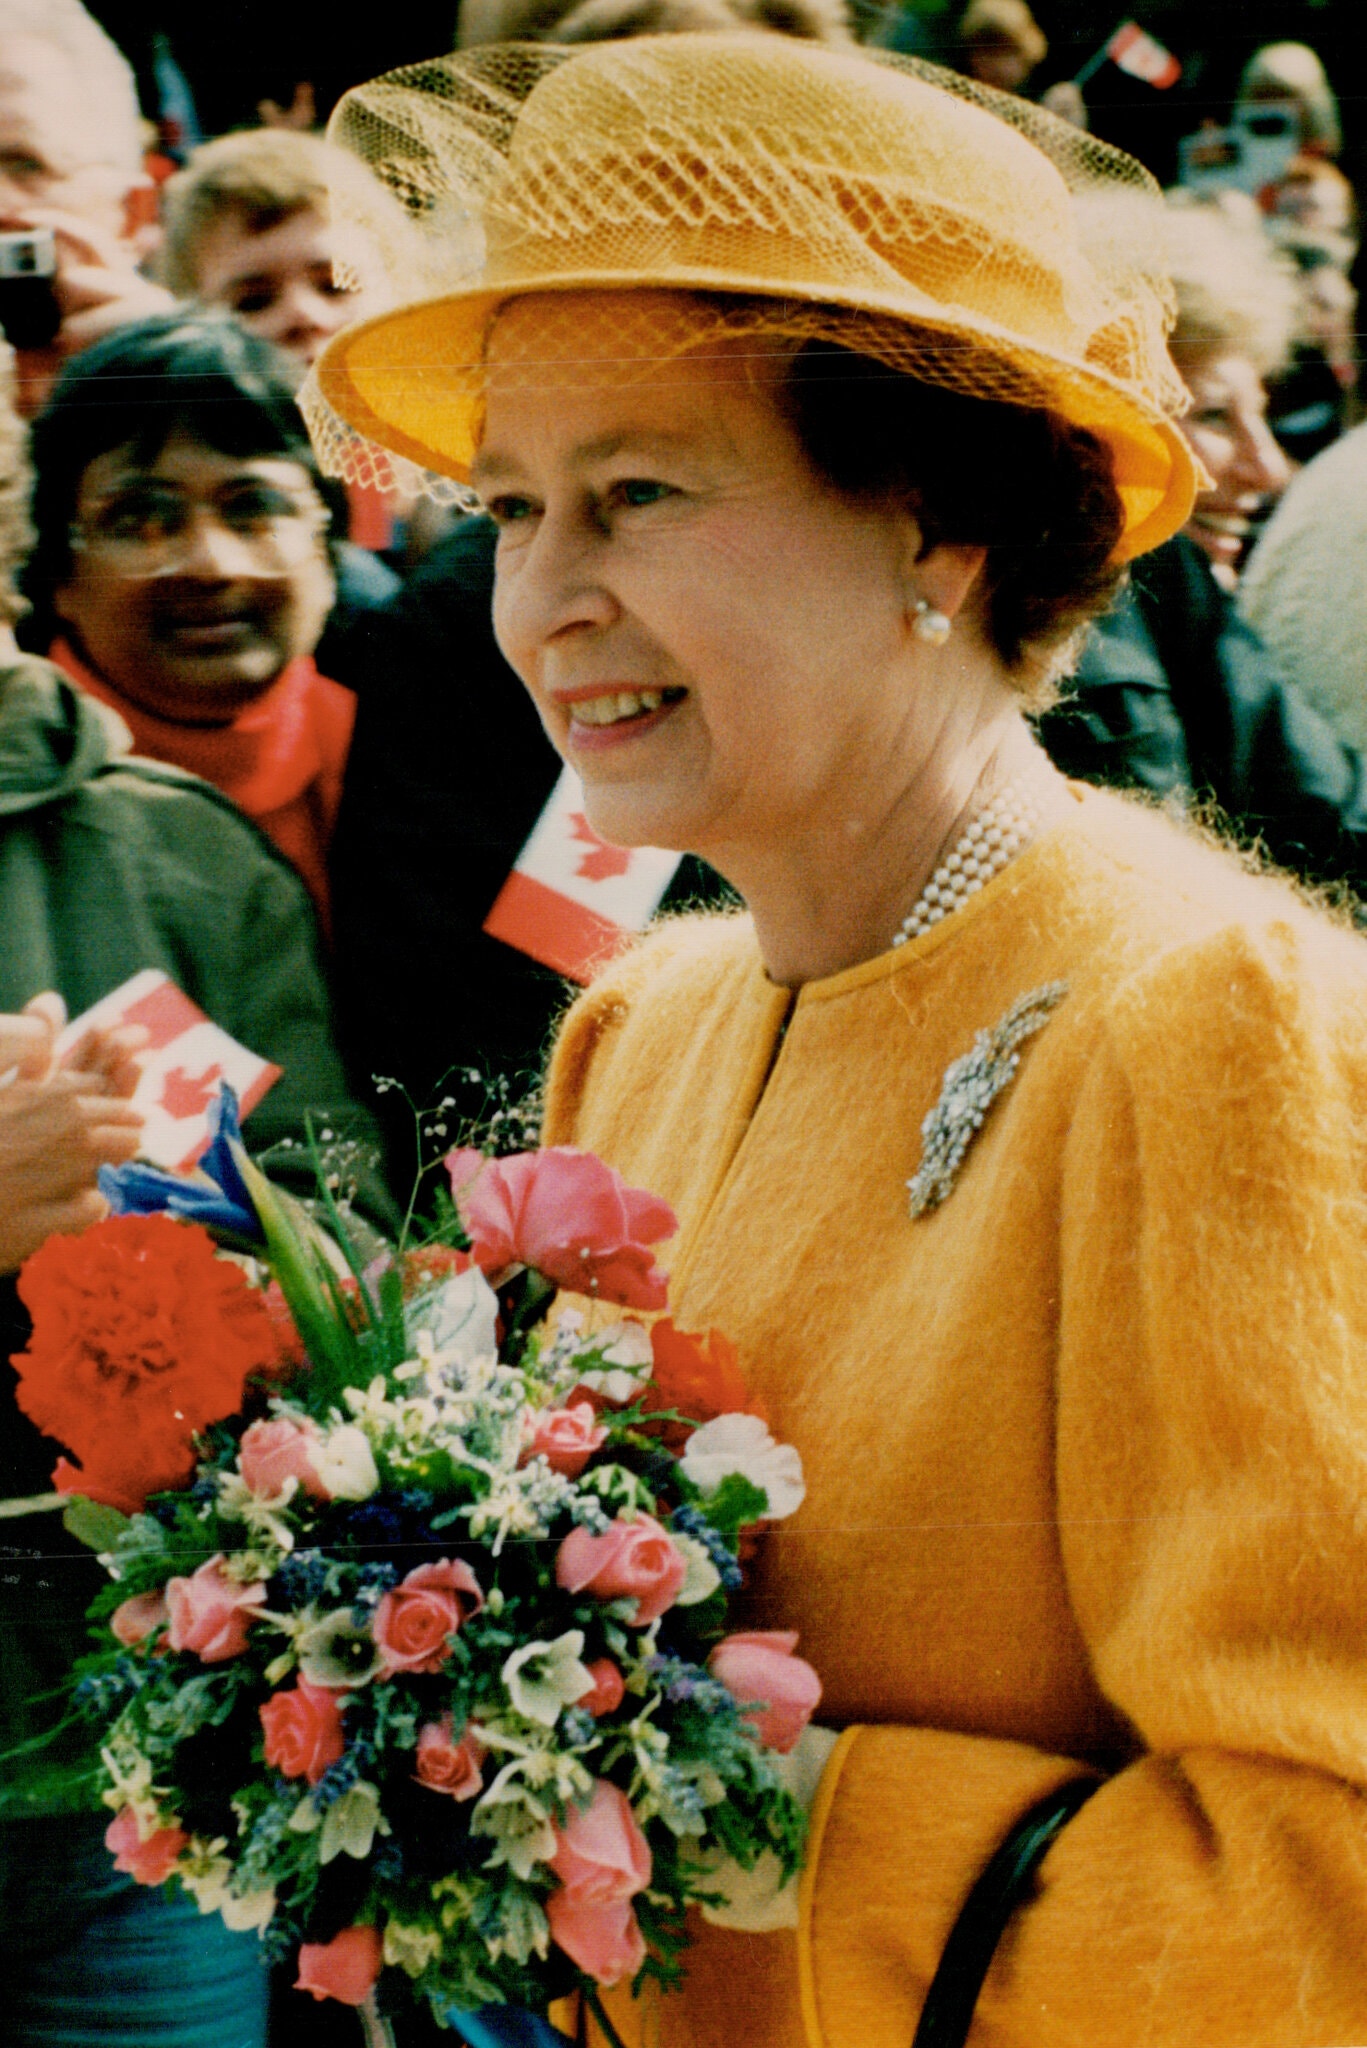 Bí mật đằng sau gu thời trang của Nữ hoàng Anh trong 70 năm trị vì: Dùng trang phục để thể hiện quyền lực - Ảnh 8.